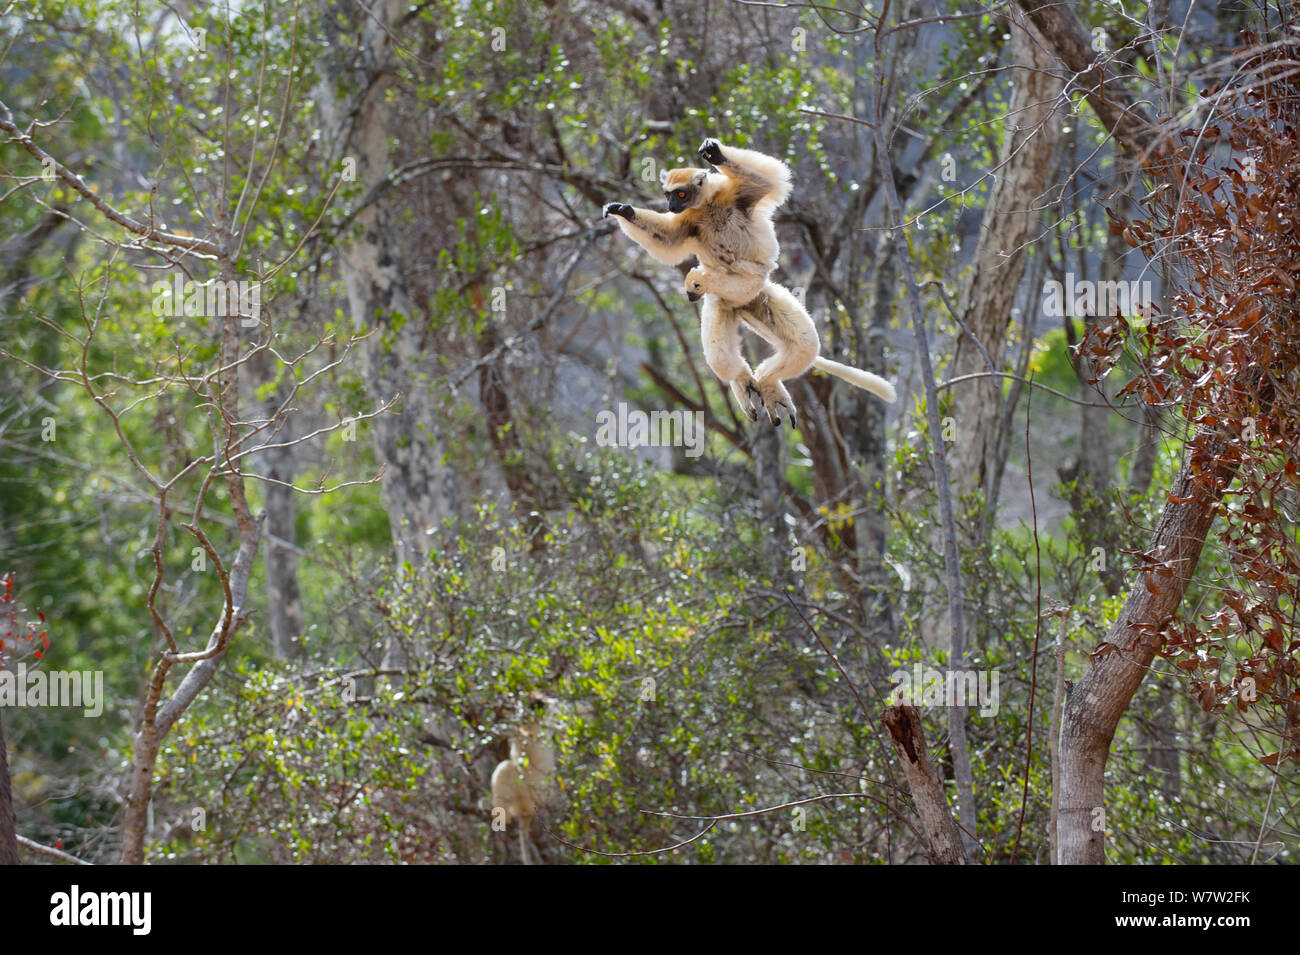 Weibliche Golden gekrönte Sifaka (Propithecus tattersalli) Durchführung Kleinkind und sprang durch die Baumkronen. Die Wälder in der Nähe des Dorfes, in der Nähe von Daraina Andranotsimaty, Madagaskar. Kritisch gefährdeten Arten. Stockfoto